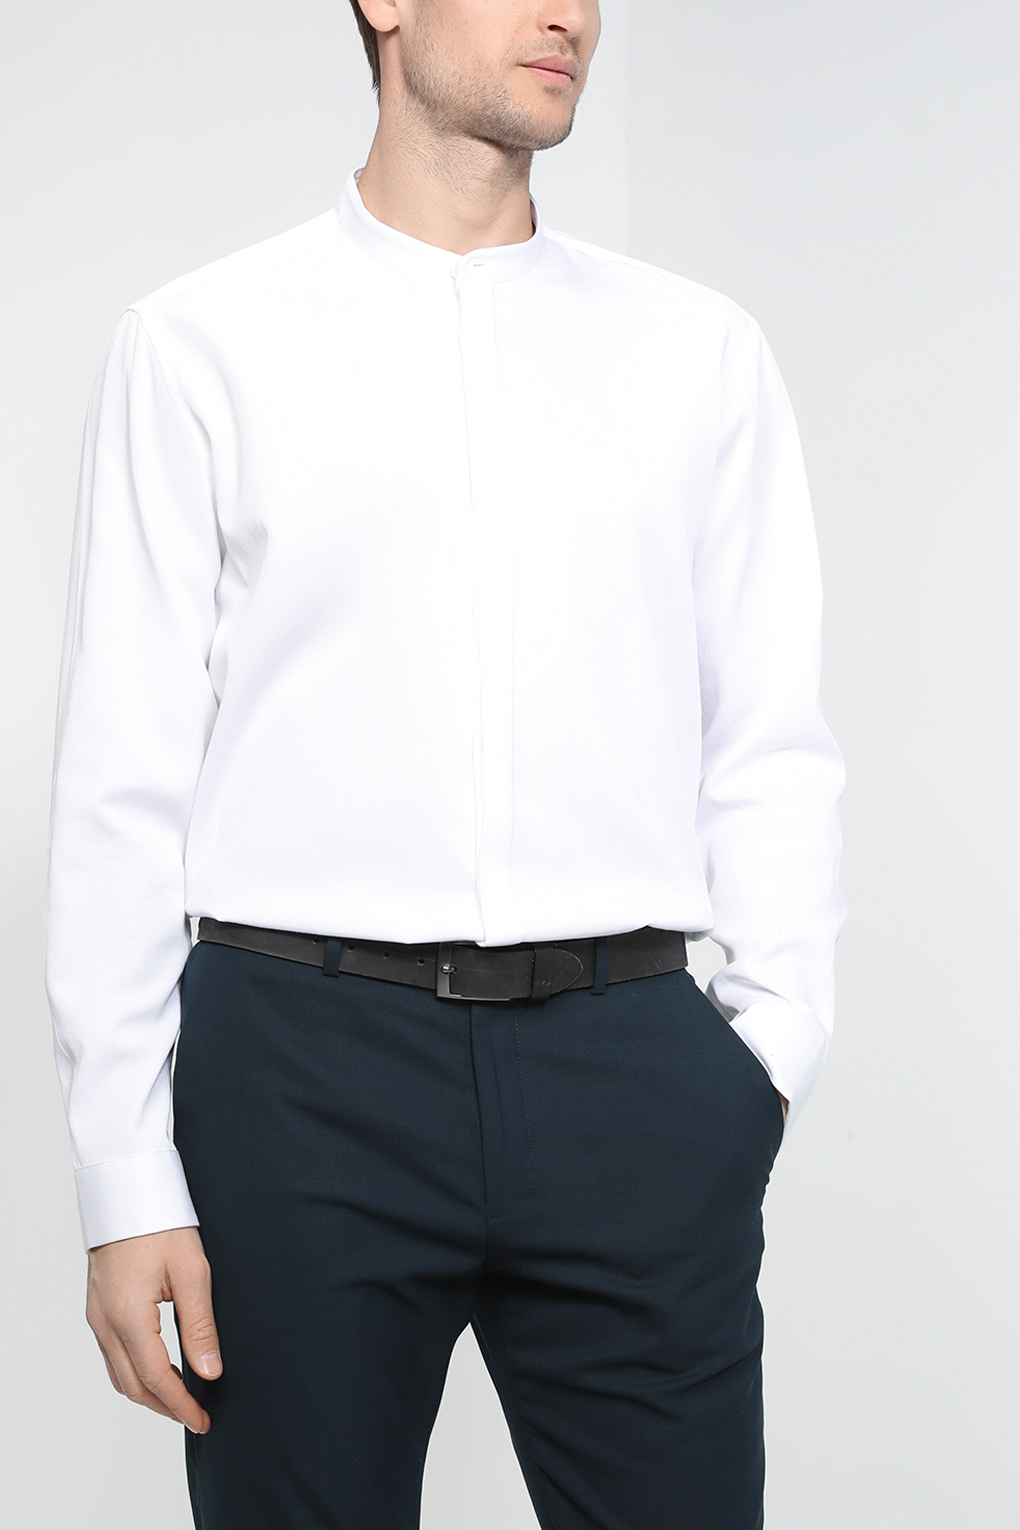 Рубашка мужская Esprit Casual 022EO2F303 белая 2XL